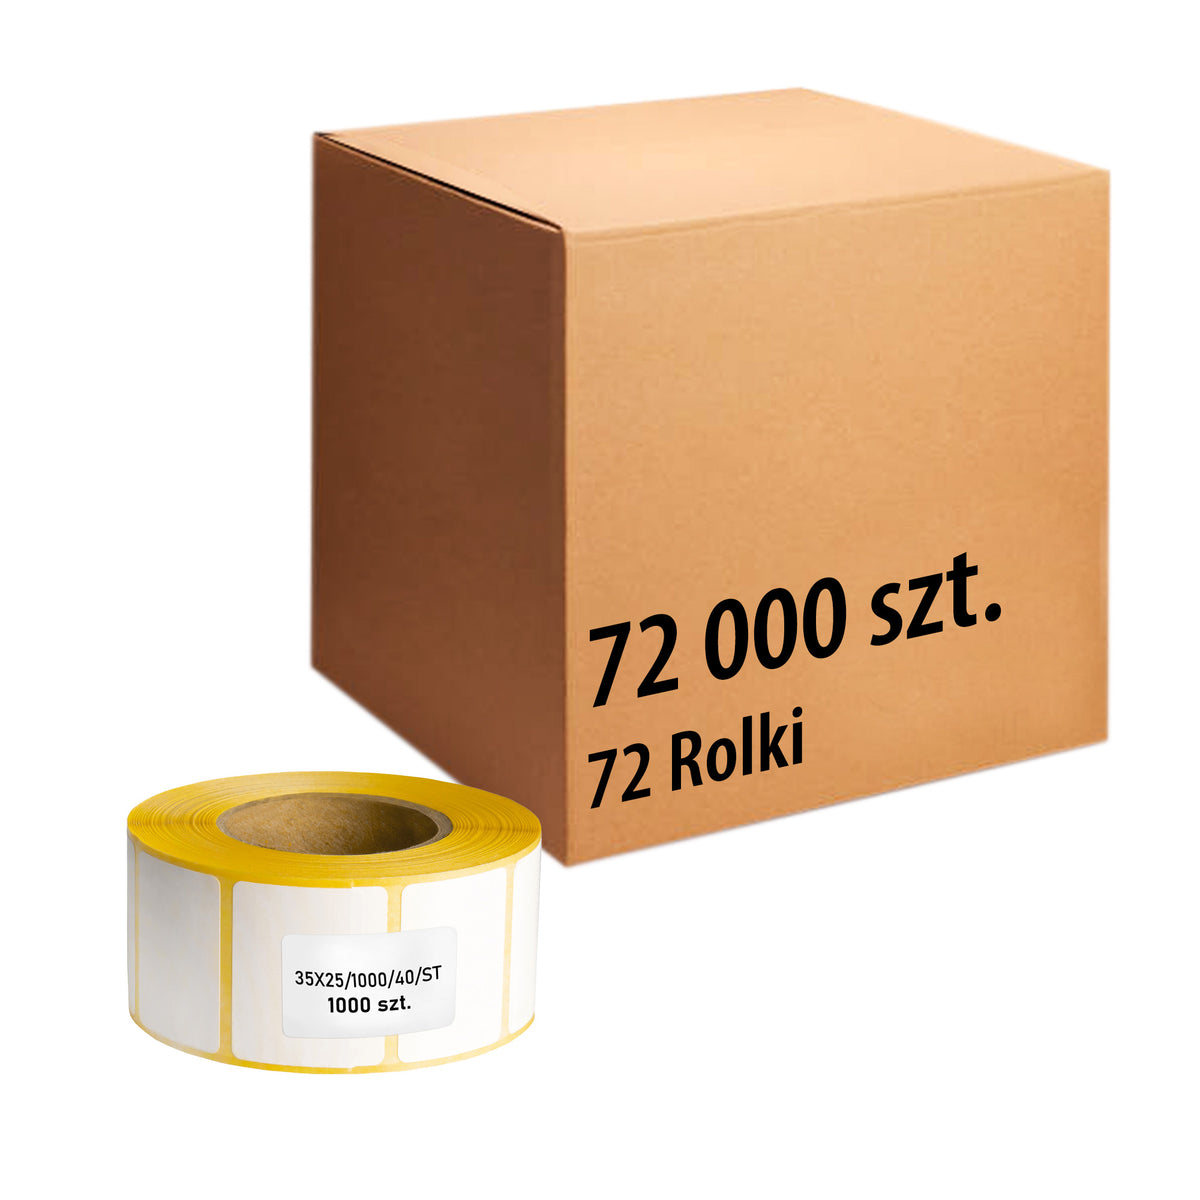 Etykiety termiczne 35x25mm 1000' 72 rolki - 72000 sztuk etykiet